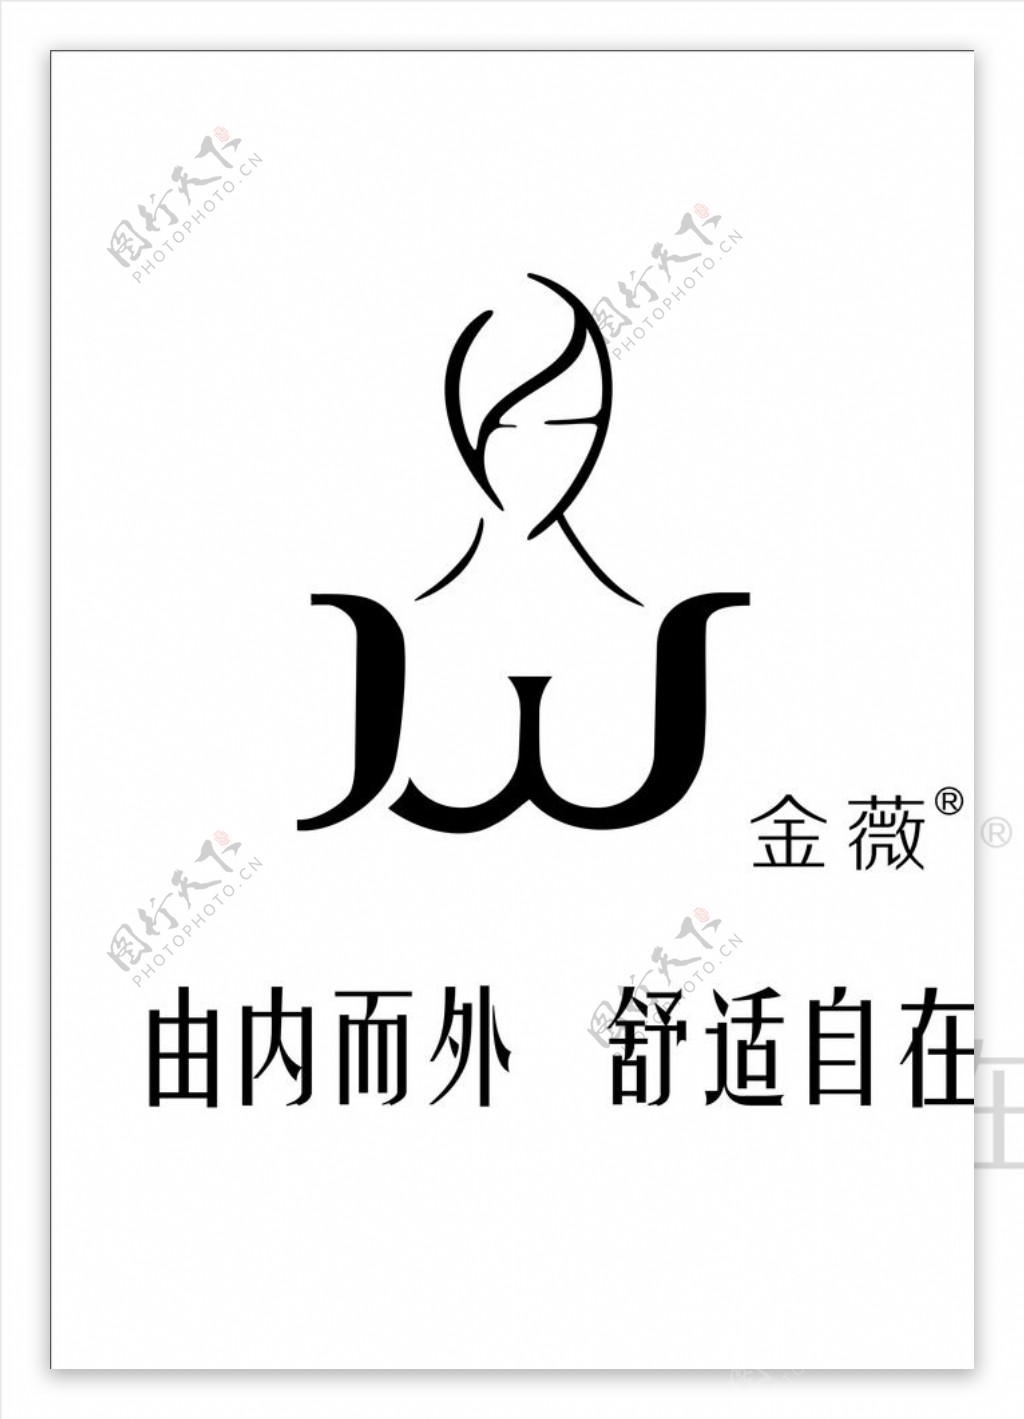 金薇logo